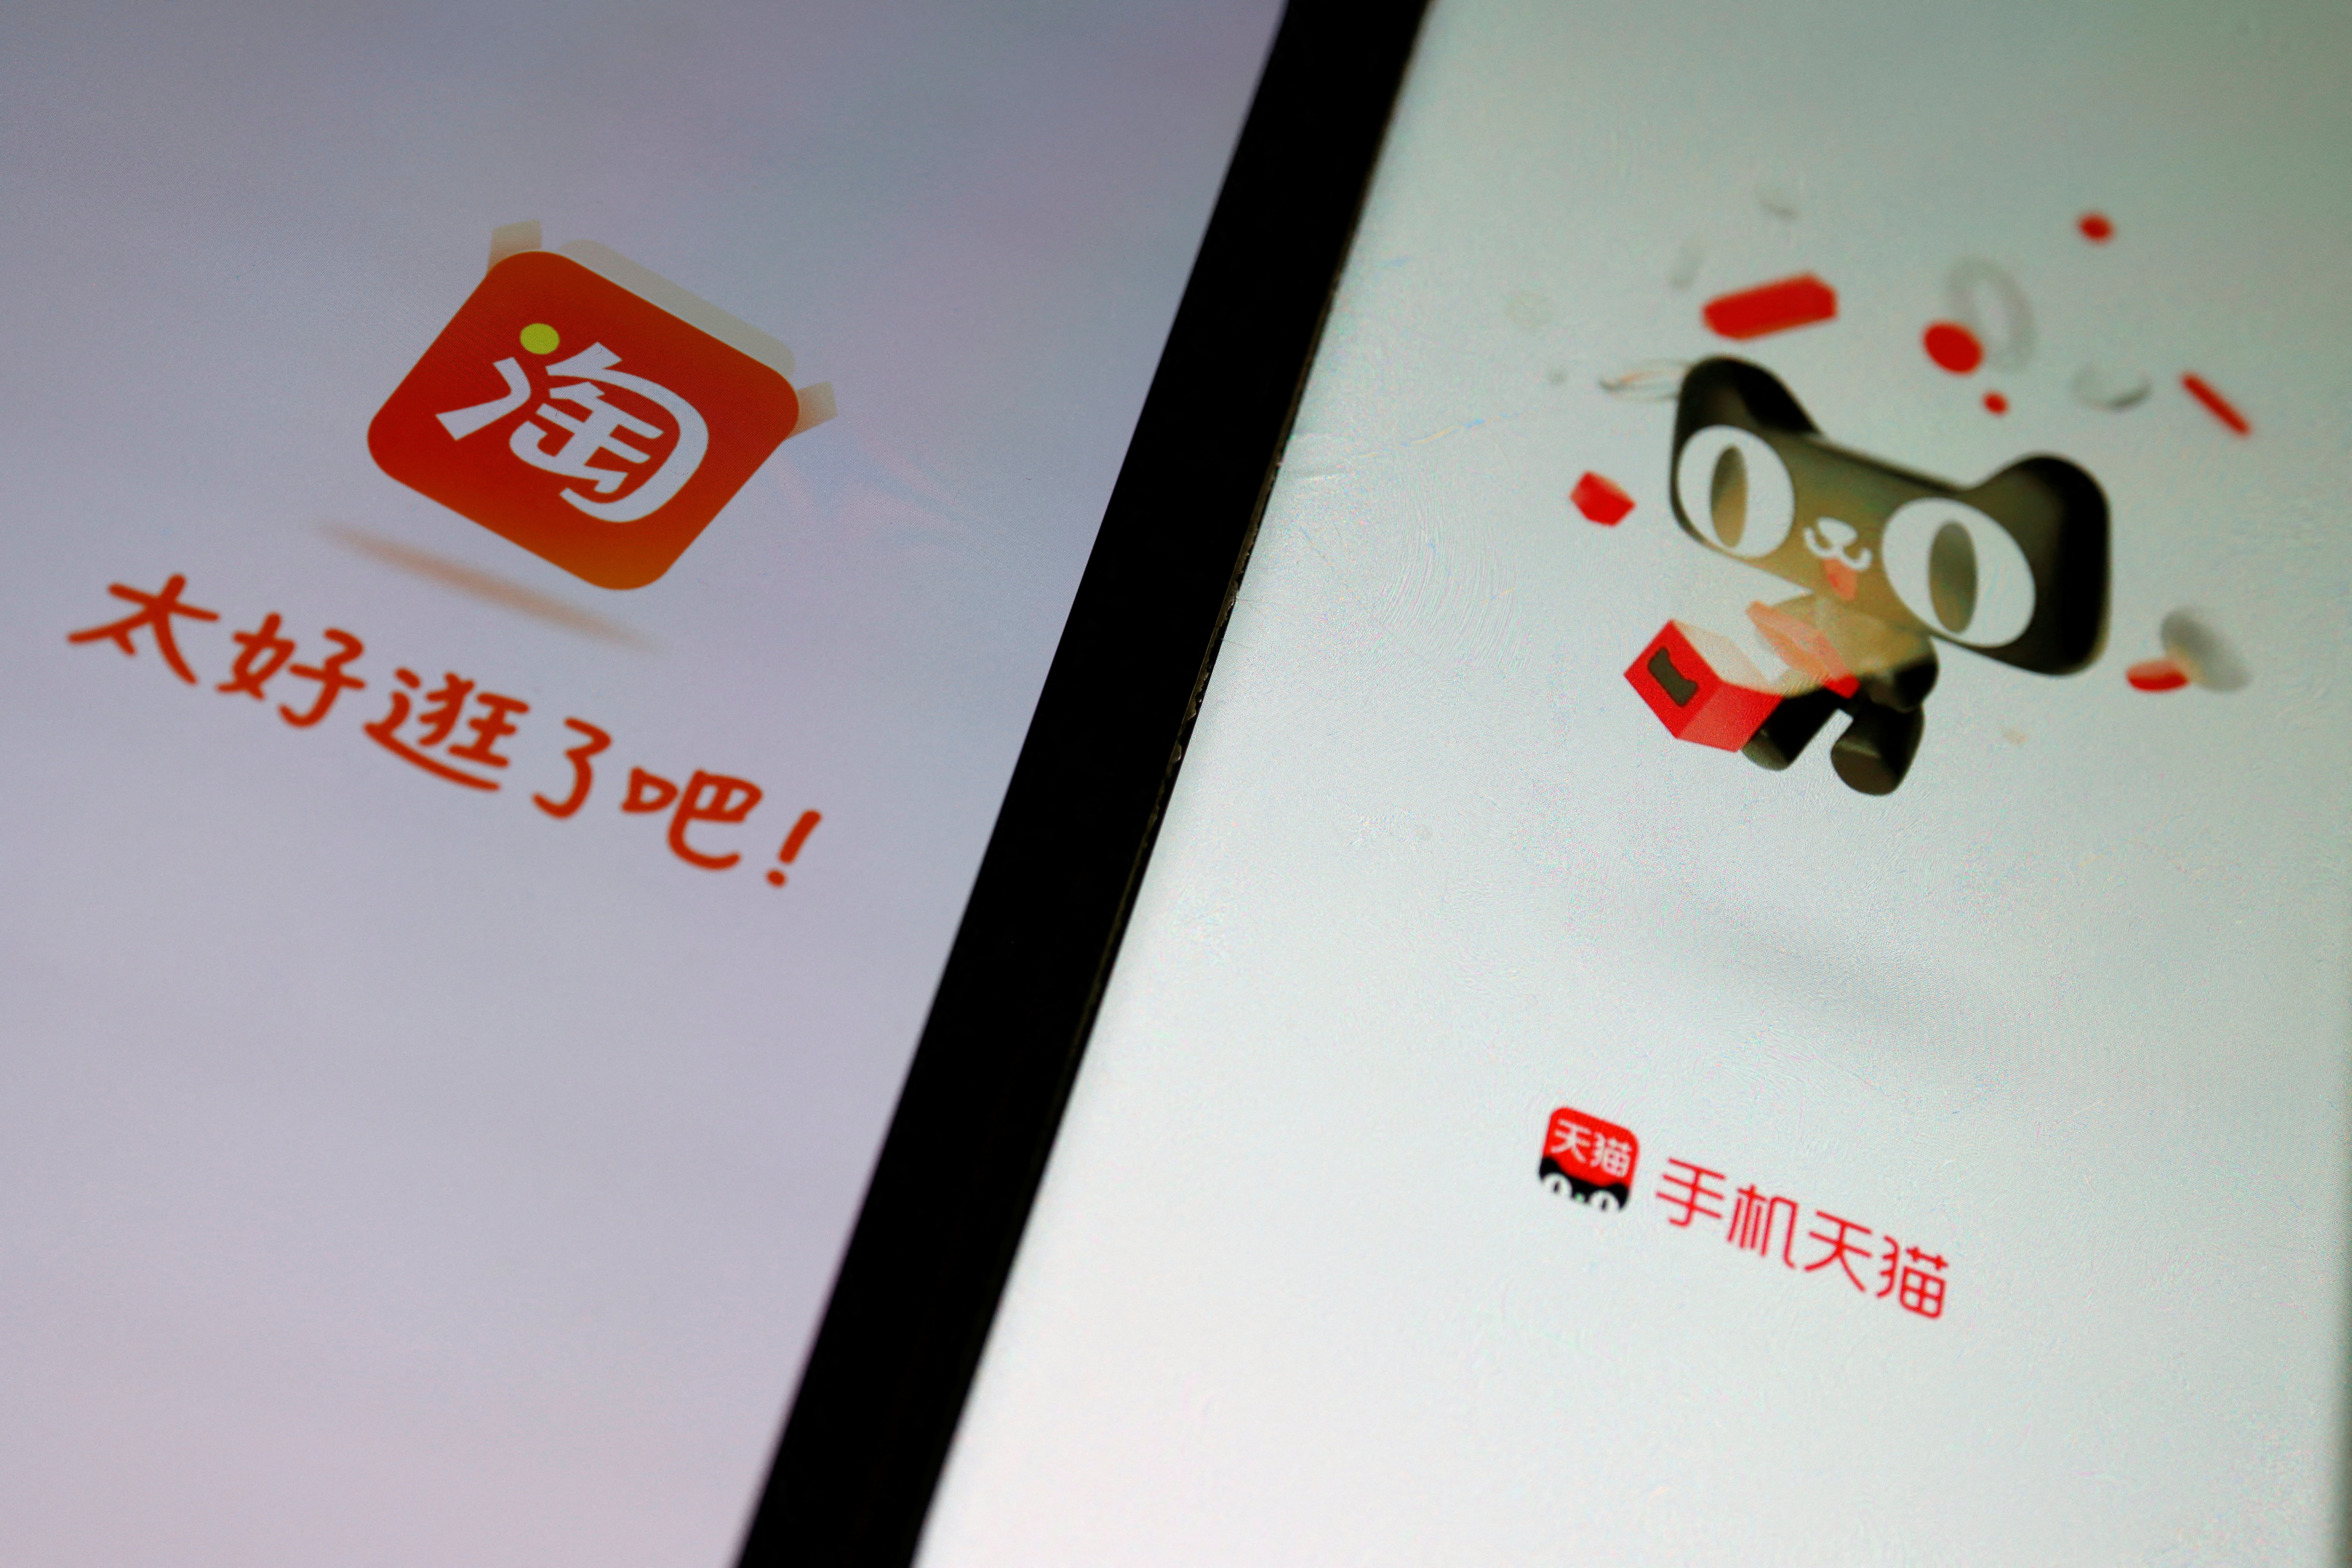 Imagen ilustrativa de las aplicaciones de comercio electrónico de Alibaba, Taobao y Tmall